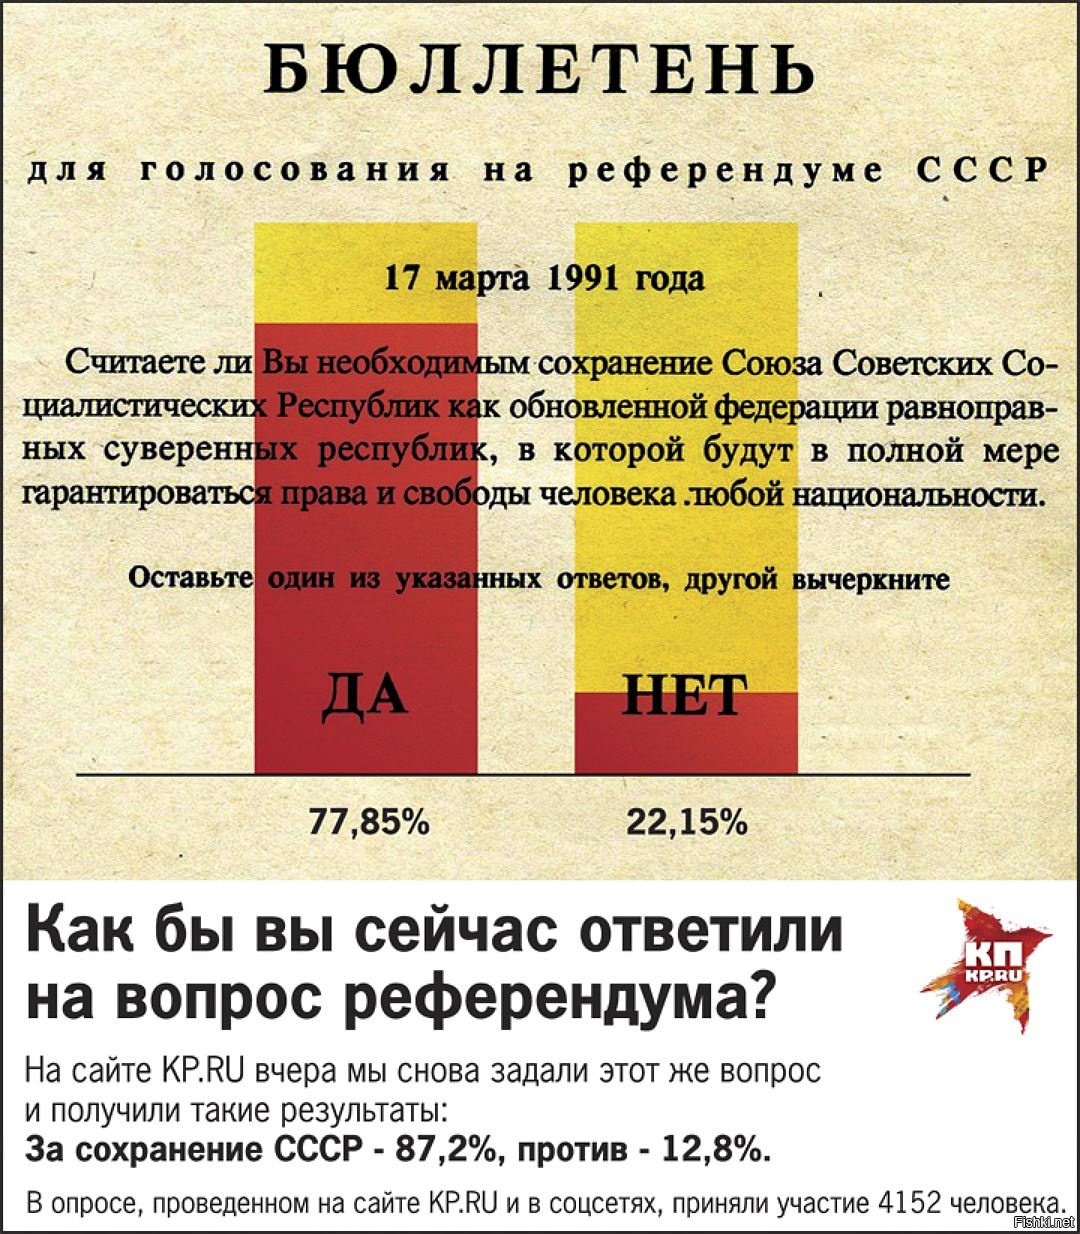 Где сколько проголосовало. Бюллетень голосования 1991 года о сохранении СССР. Референдум 1991 года о сохранении СССР бюллетень. Референдум за сохранение СССР вопросы.